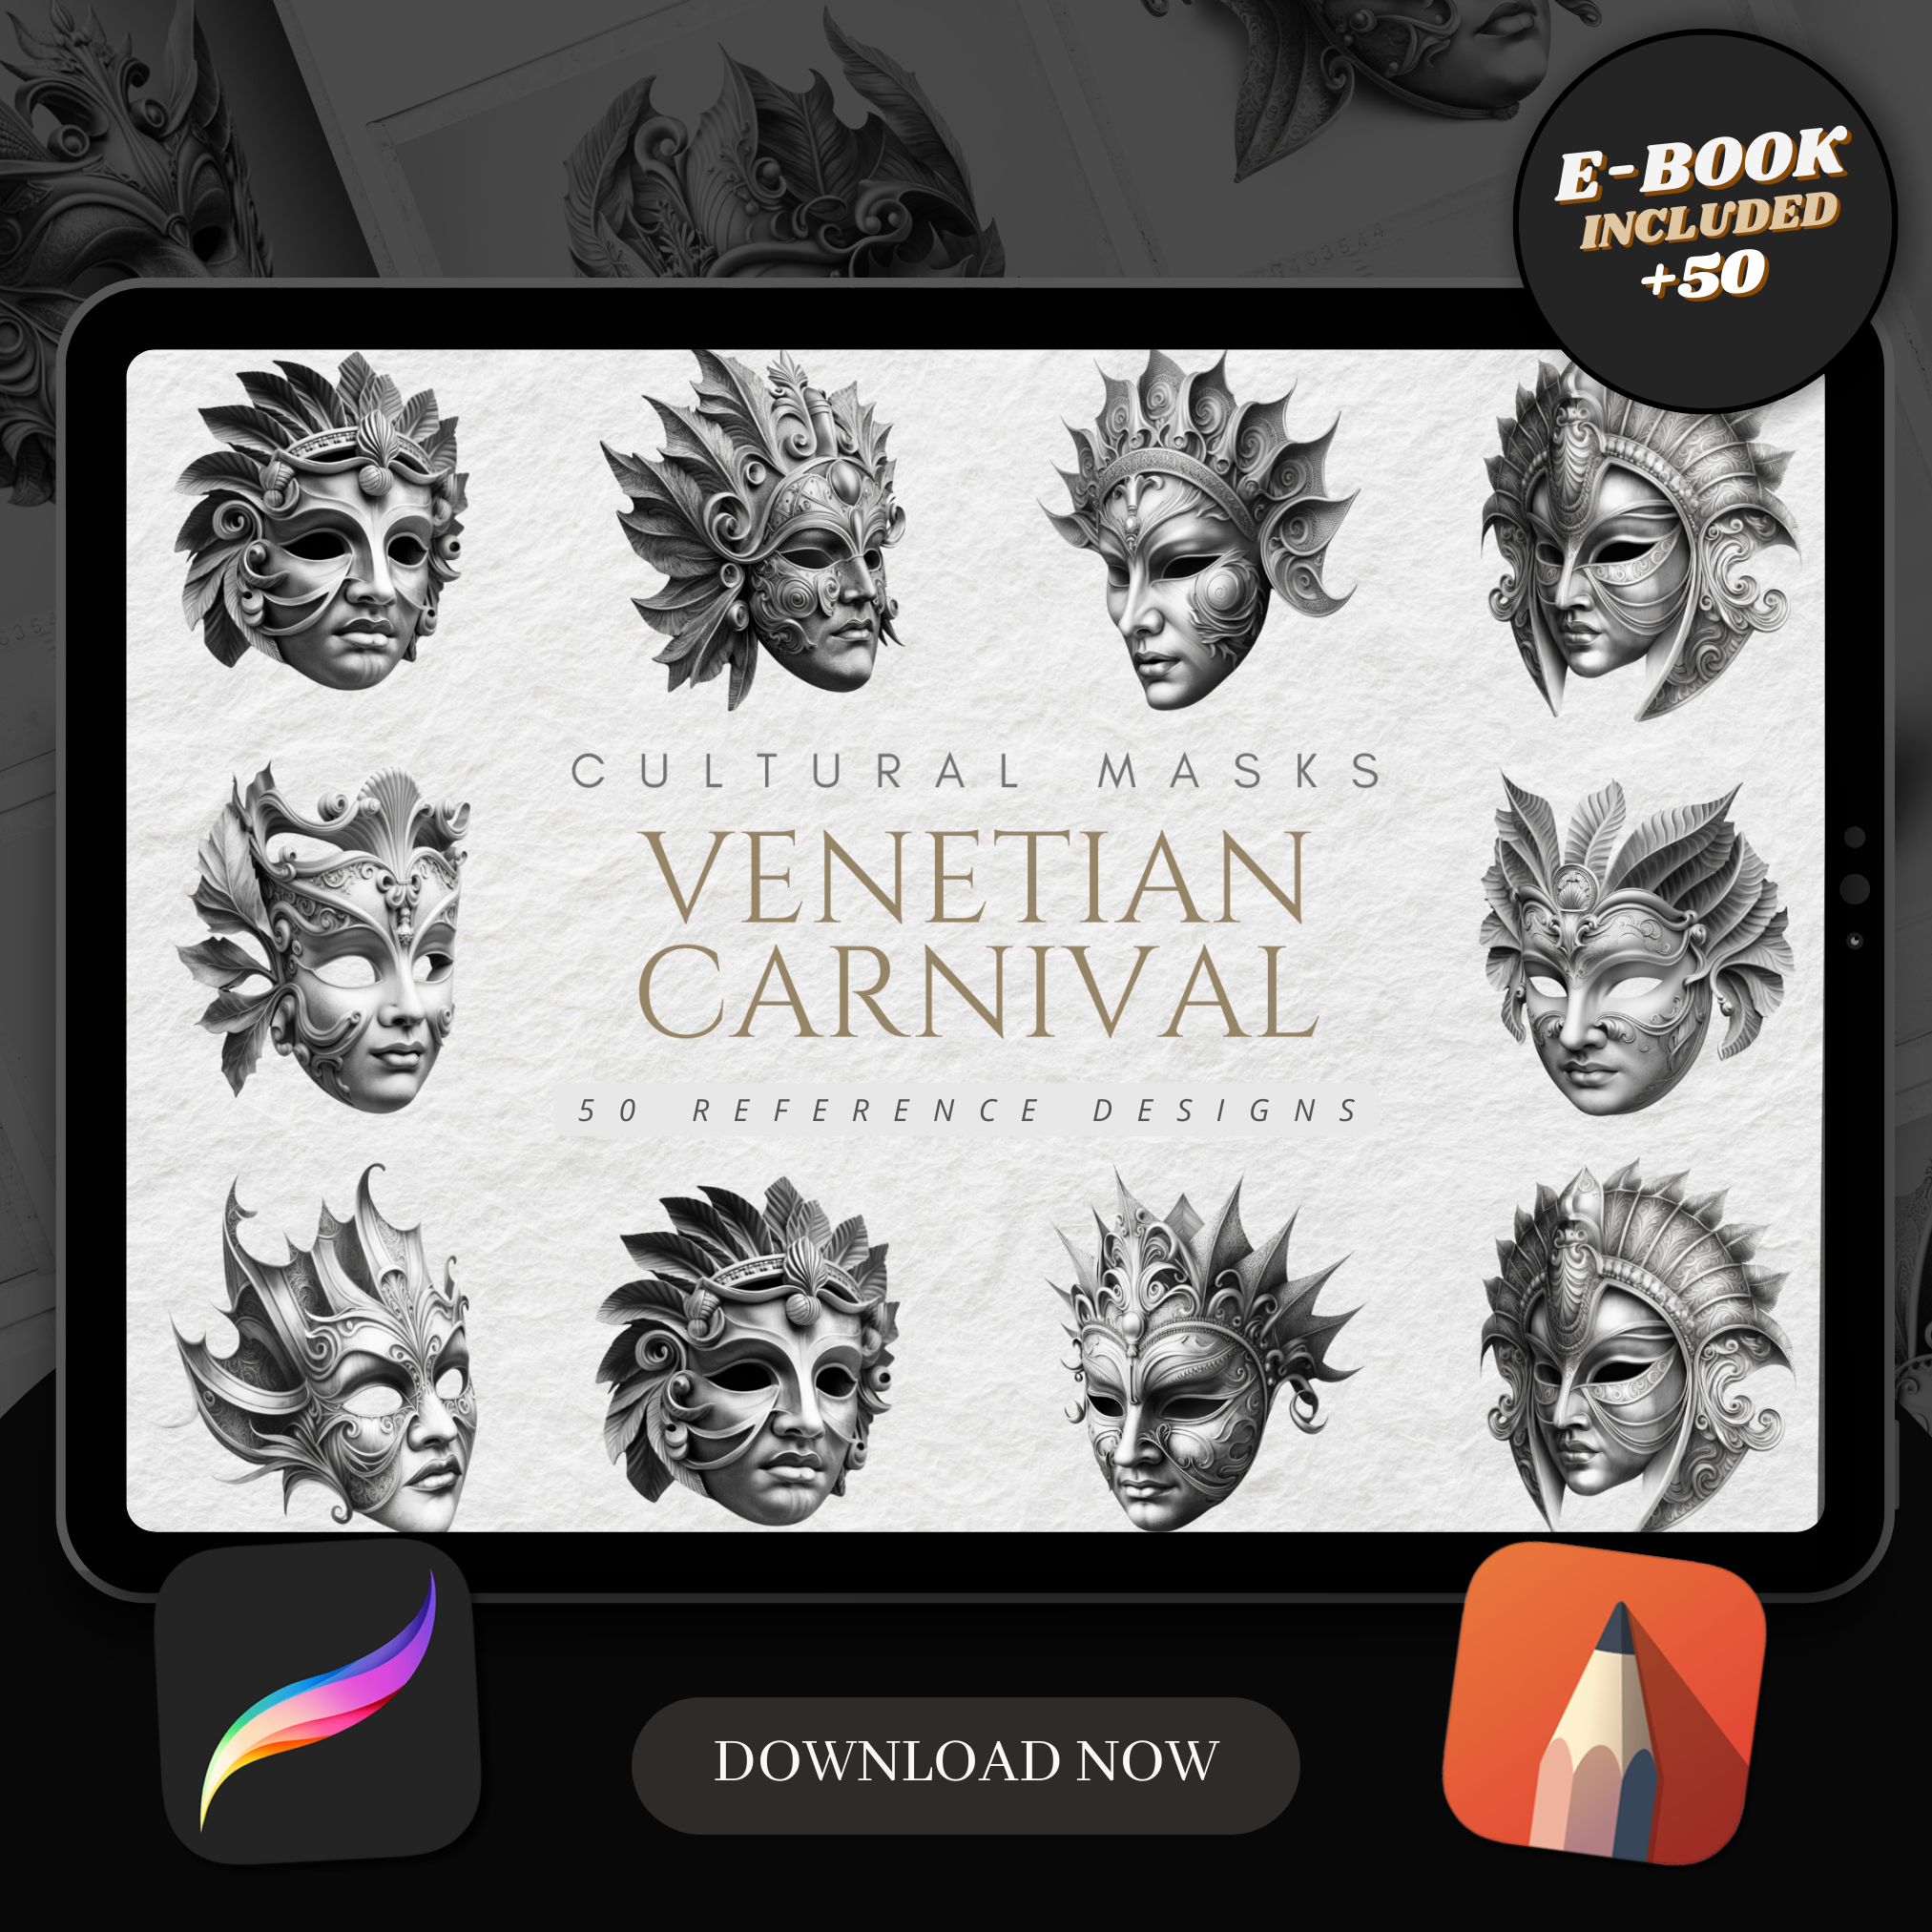 Venetian Carnival Masks Digital Reference Design Collection: 50 Procreate & Sketchbook Images